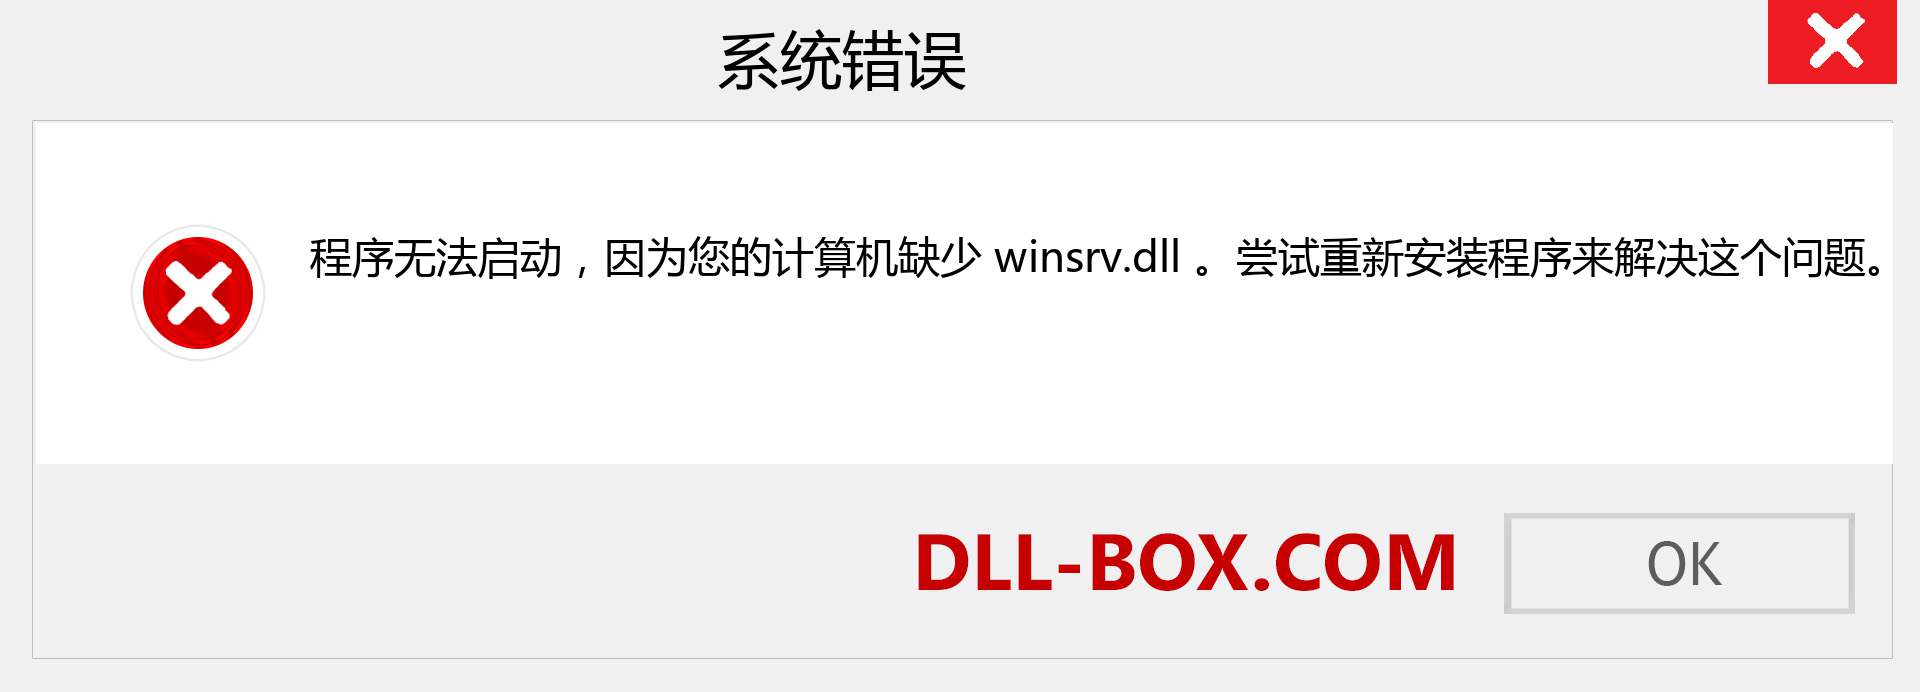 winsrv.dll 文件丢失？。 适用于 Windows 7、8、10 的下载 - 修复 Windows、照片、图像上的 winsrv dll 丢失错误